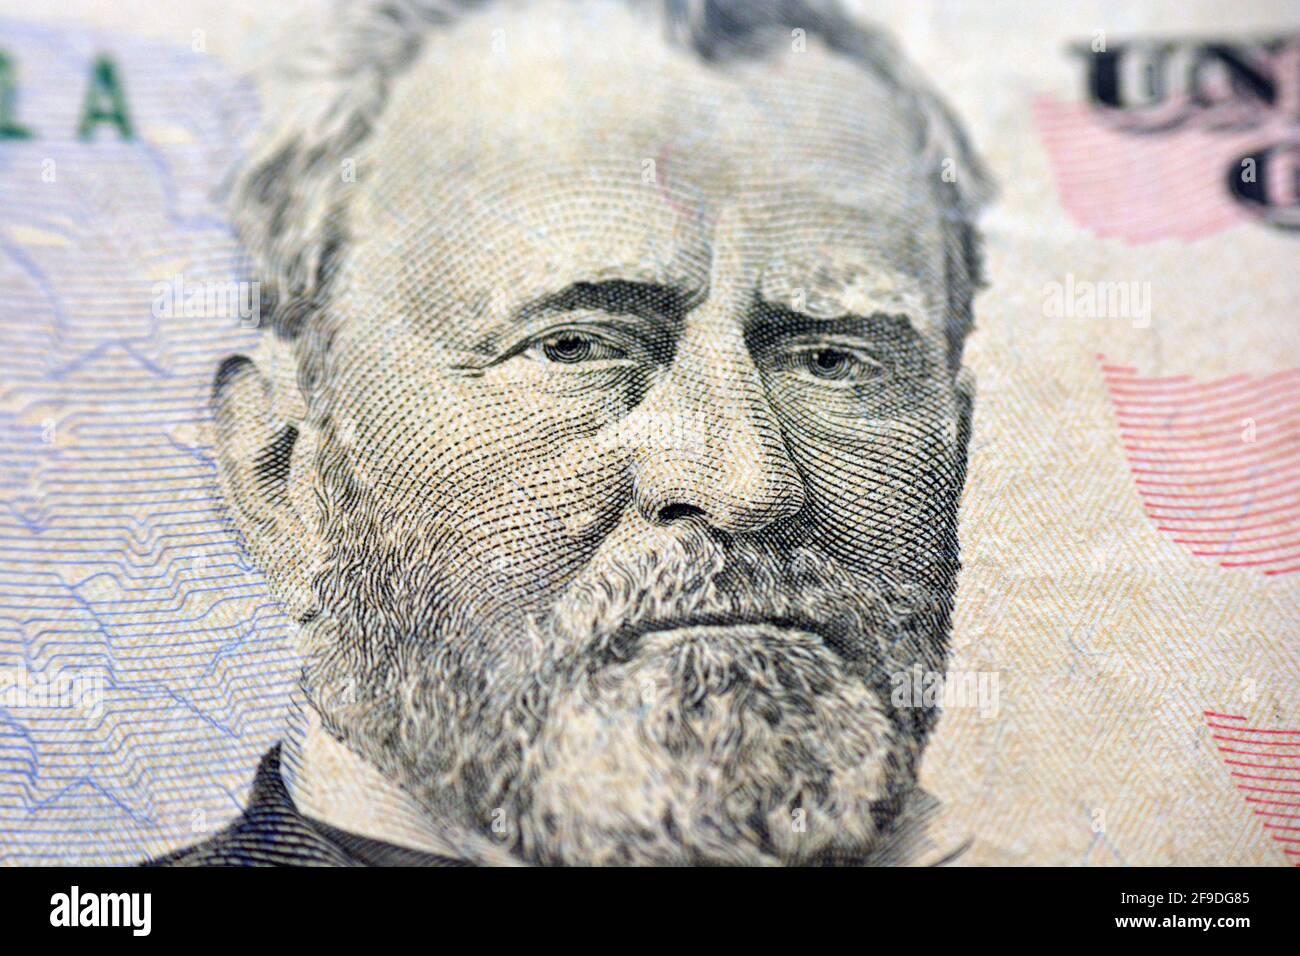 Ulysses S. Grant portrait sur le billet de 50 dollars, cinquante dollars américains fond, focus sélectif, dollars américains billet de banque Banque D'Images